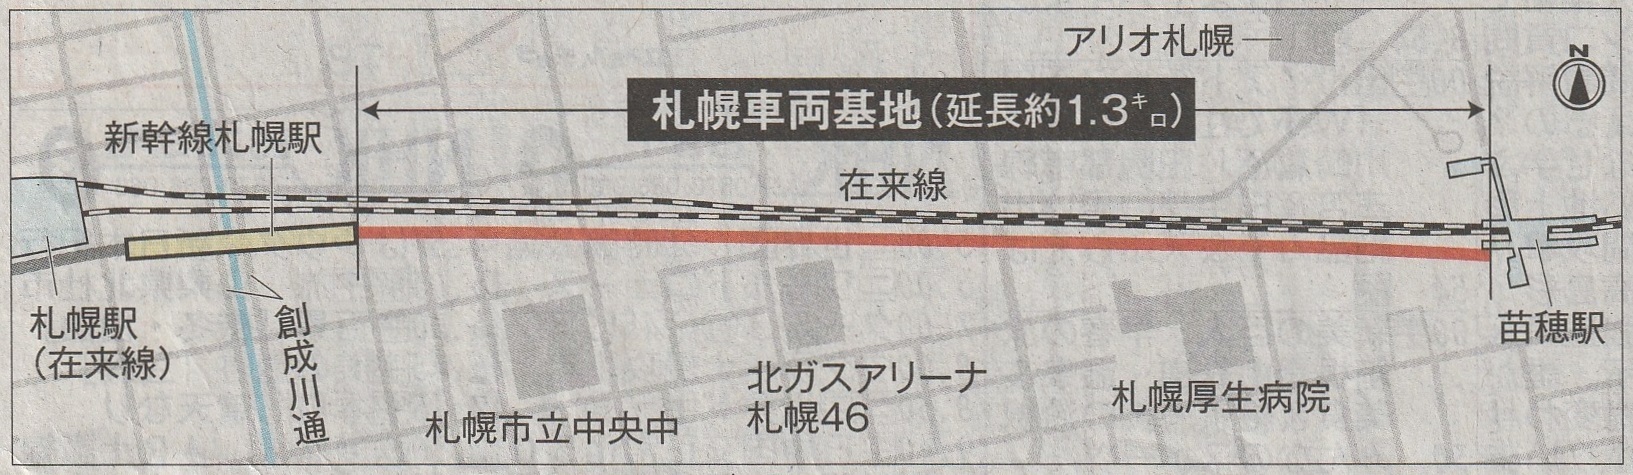 北海道新幹線札幌車両基地計画a02